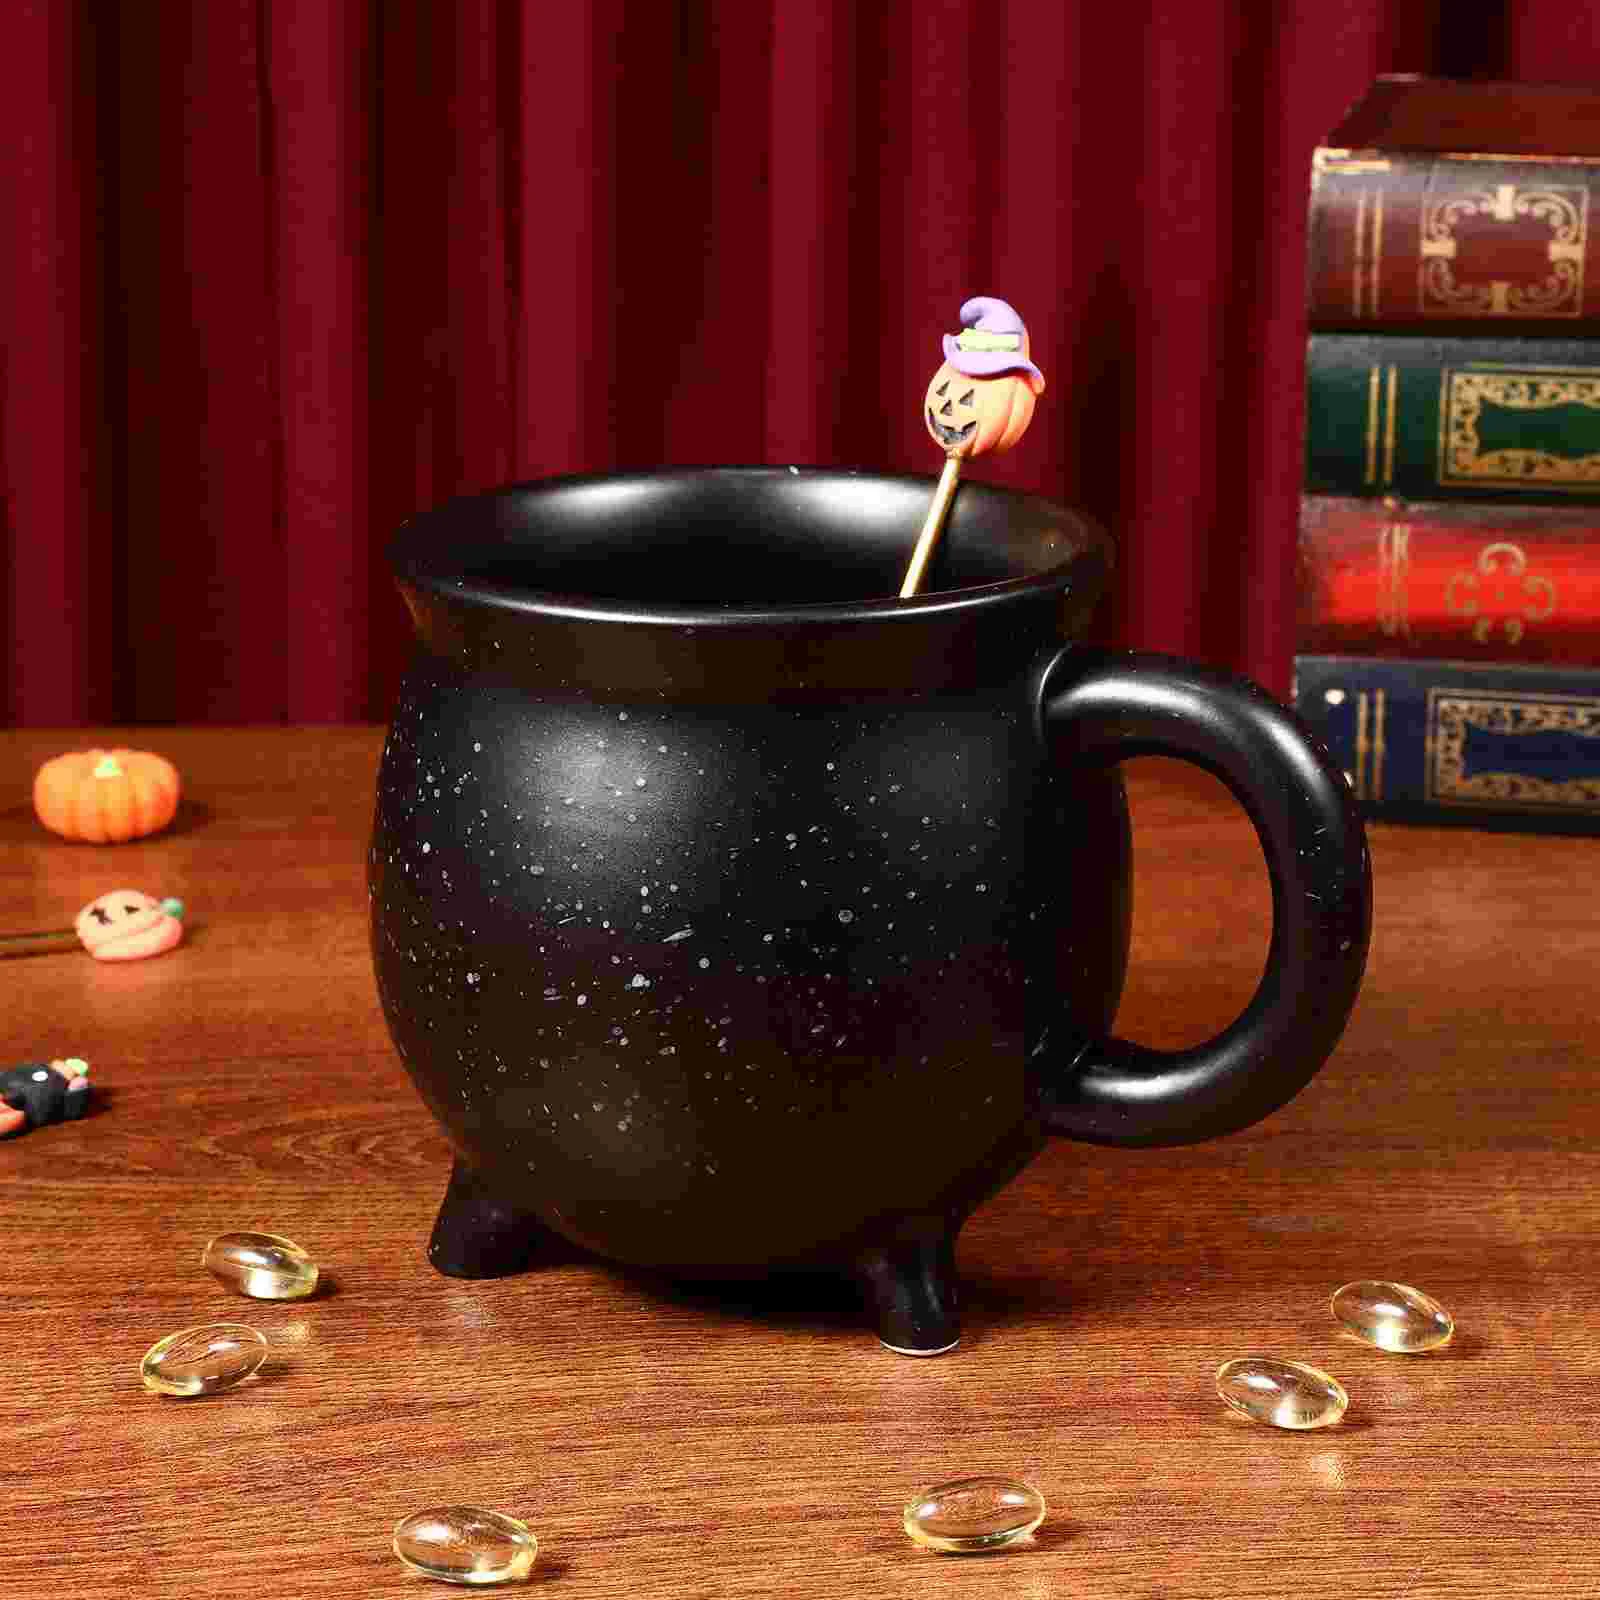 Keramika půlnoc čarodějnice cauldron hrneček halloween káva hrneček kotel hrneček novinkou dojit čaj pití pohár slavnost dekorace dar